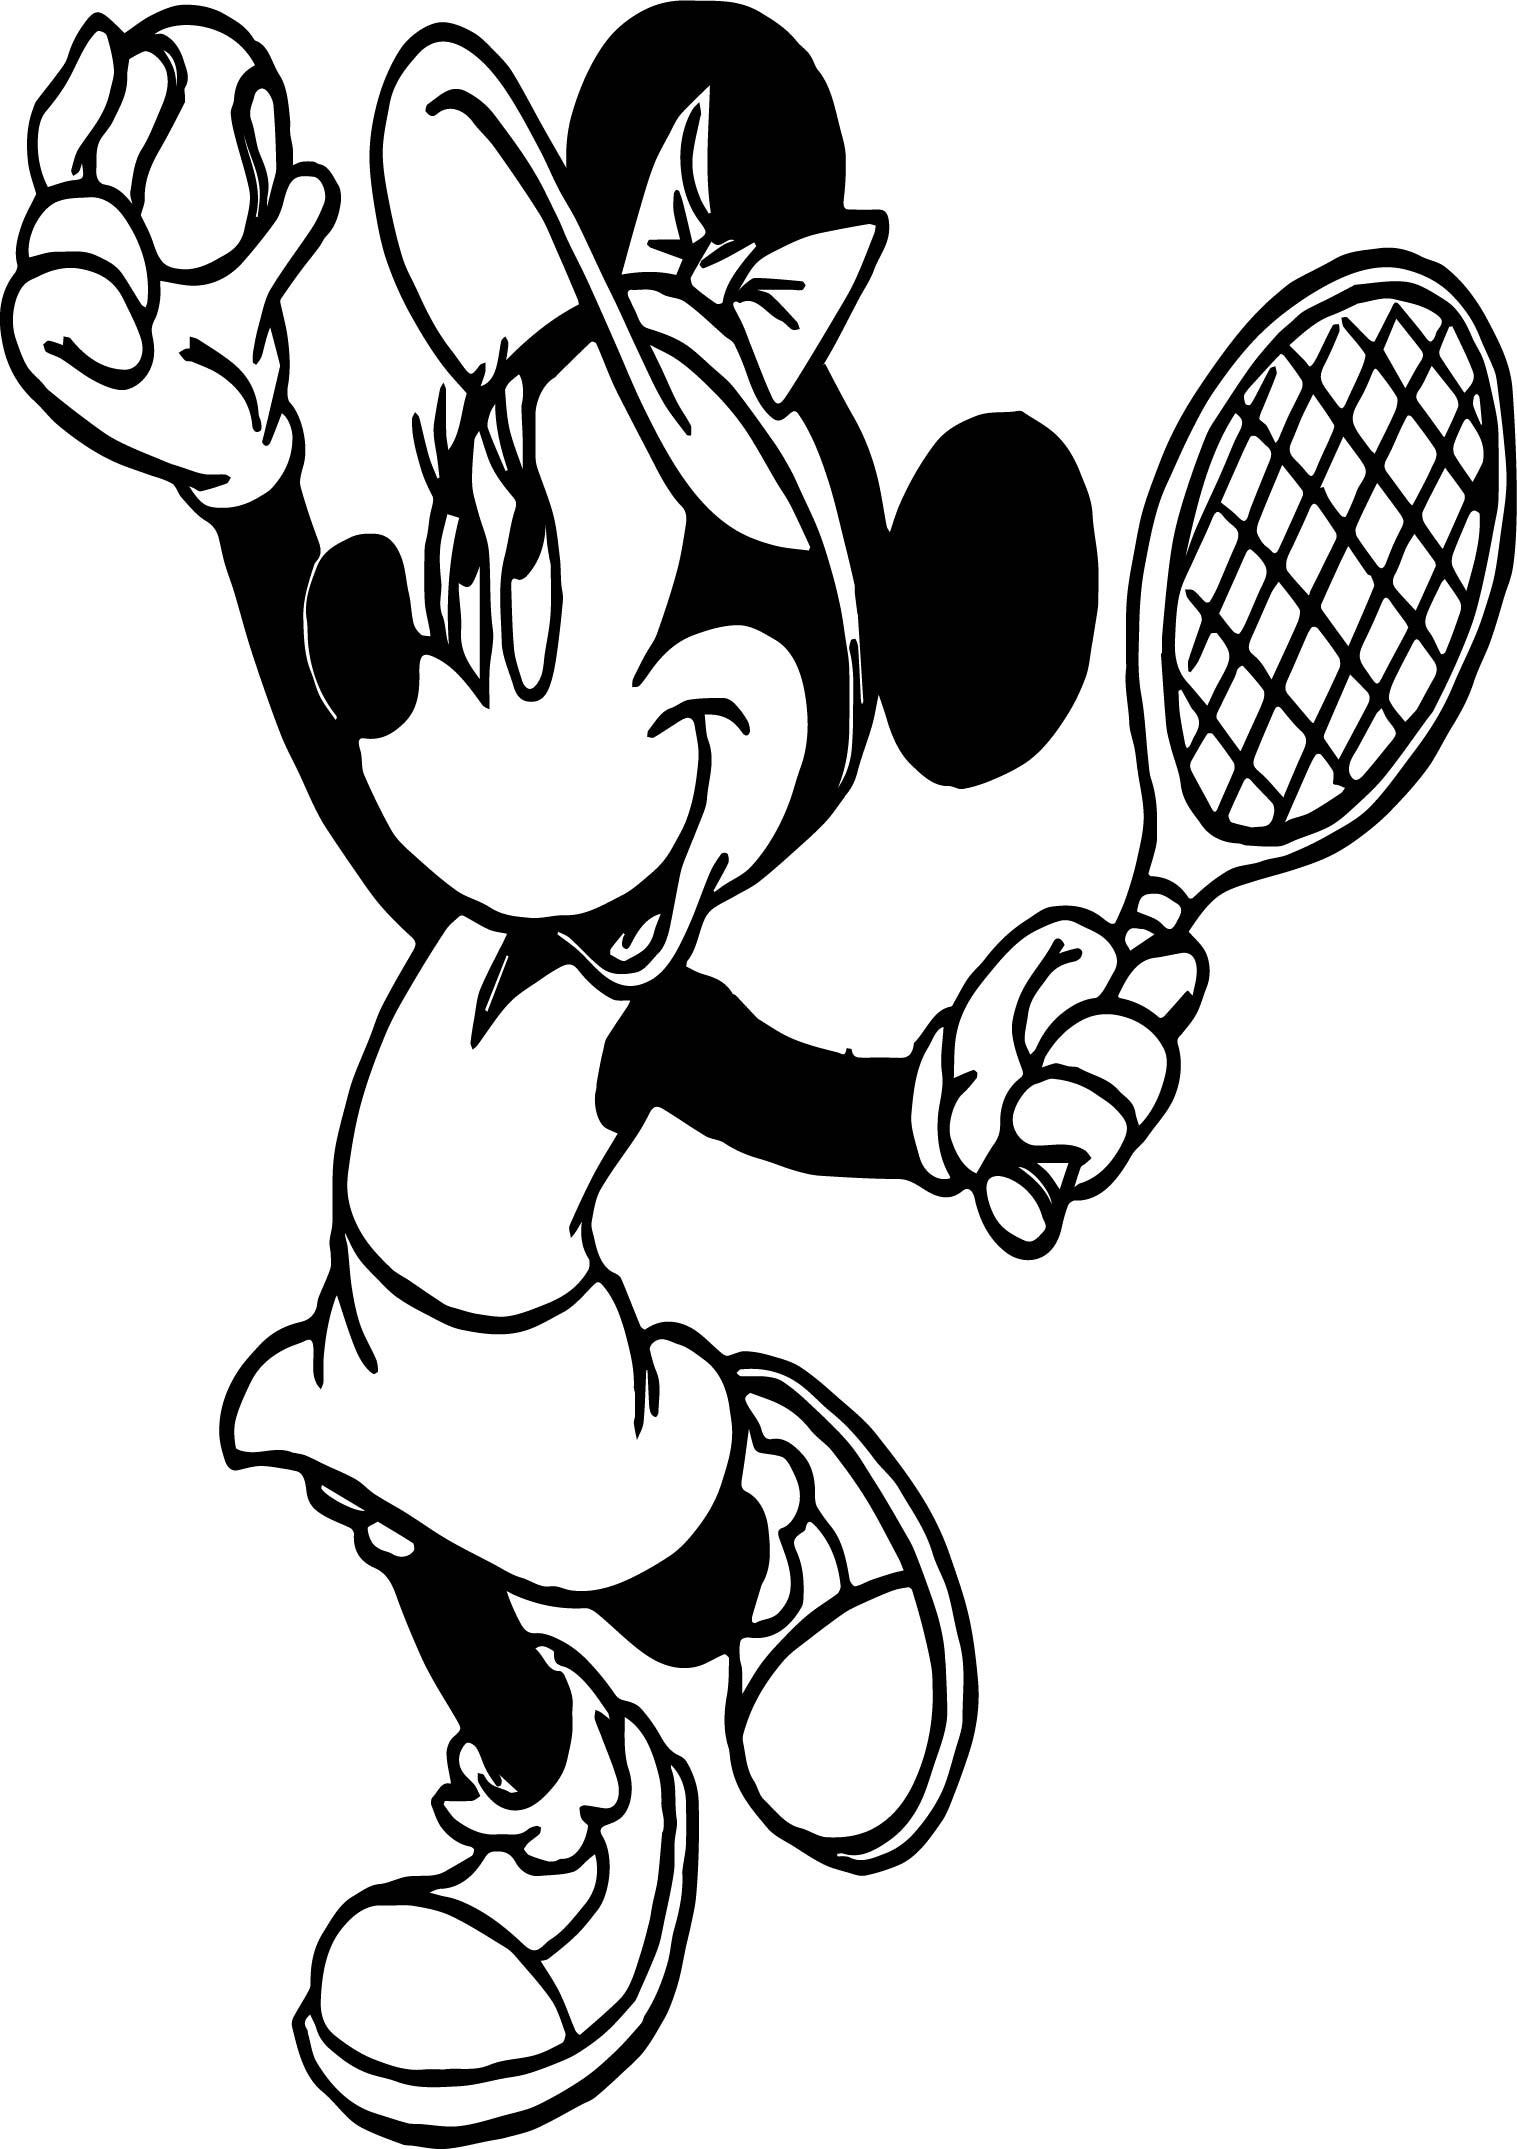 Mimi juega al tenis dibujos para colorear - Mimi juega al tenis dibujos para colorear